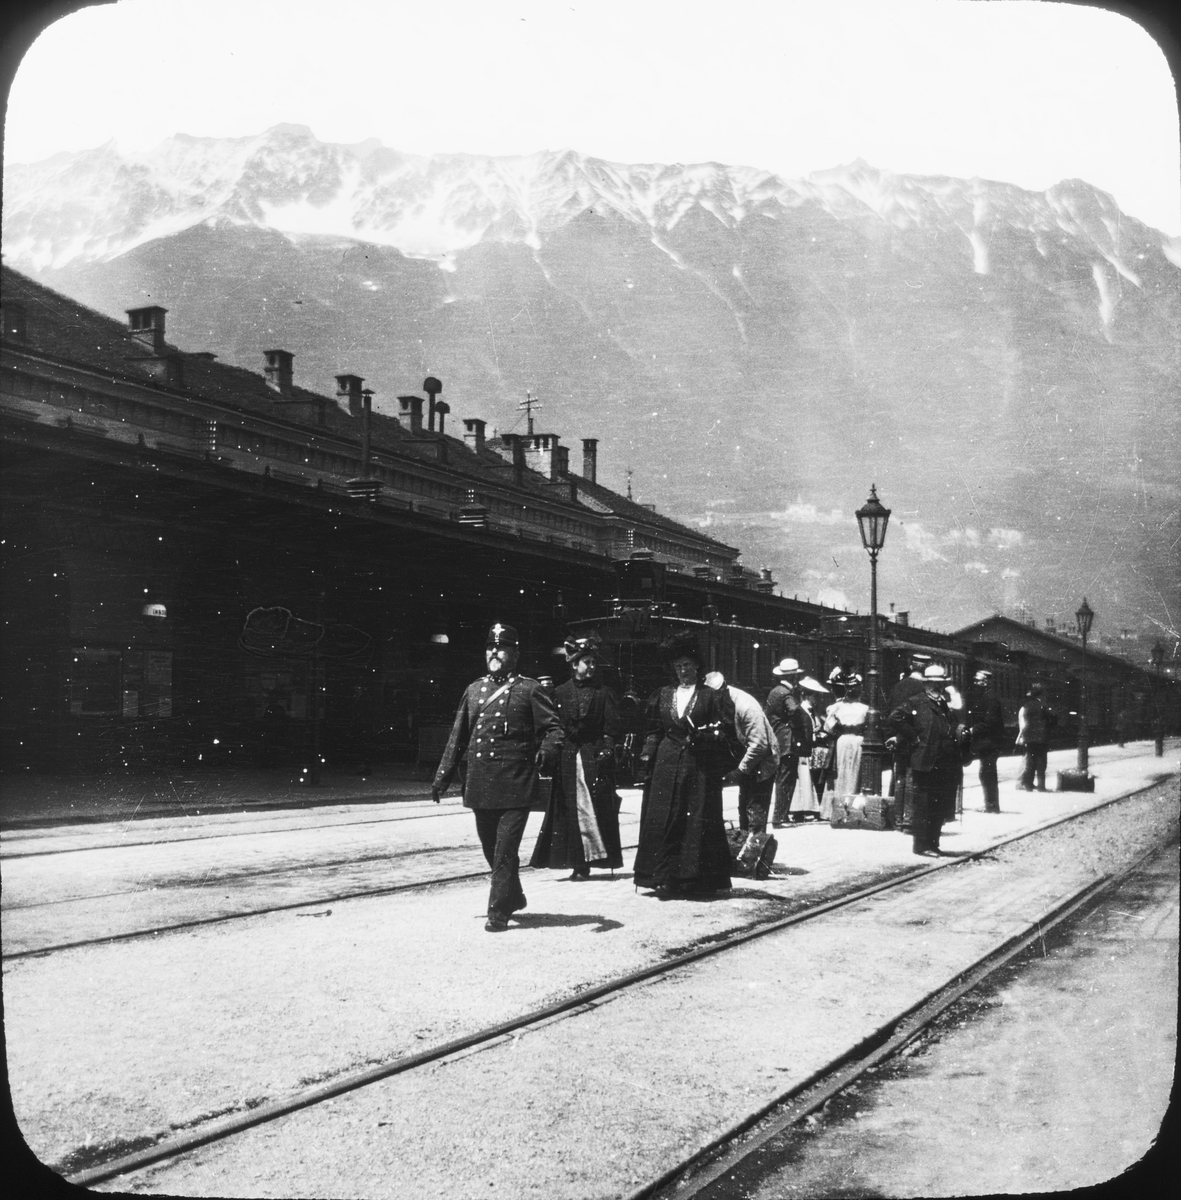 Skioptikonbild med motiv av resenärer längs Arlberg- banan mellan Innsbruck och Bludenz (Tyrolen).
Bilden har förvarats i kartong märkt: Resan 1906. Arlberg- banan 2. Konstanz 6. Text på bild: "Arlberg- banan".